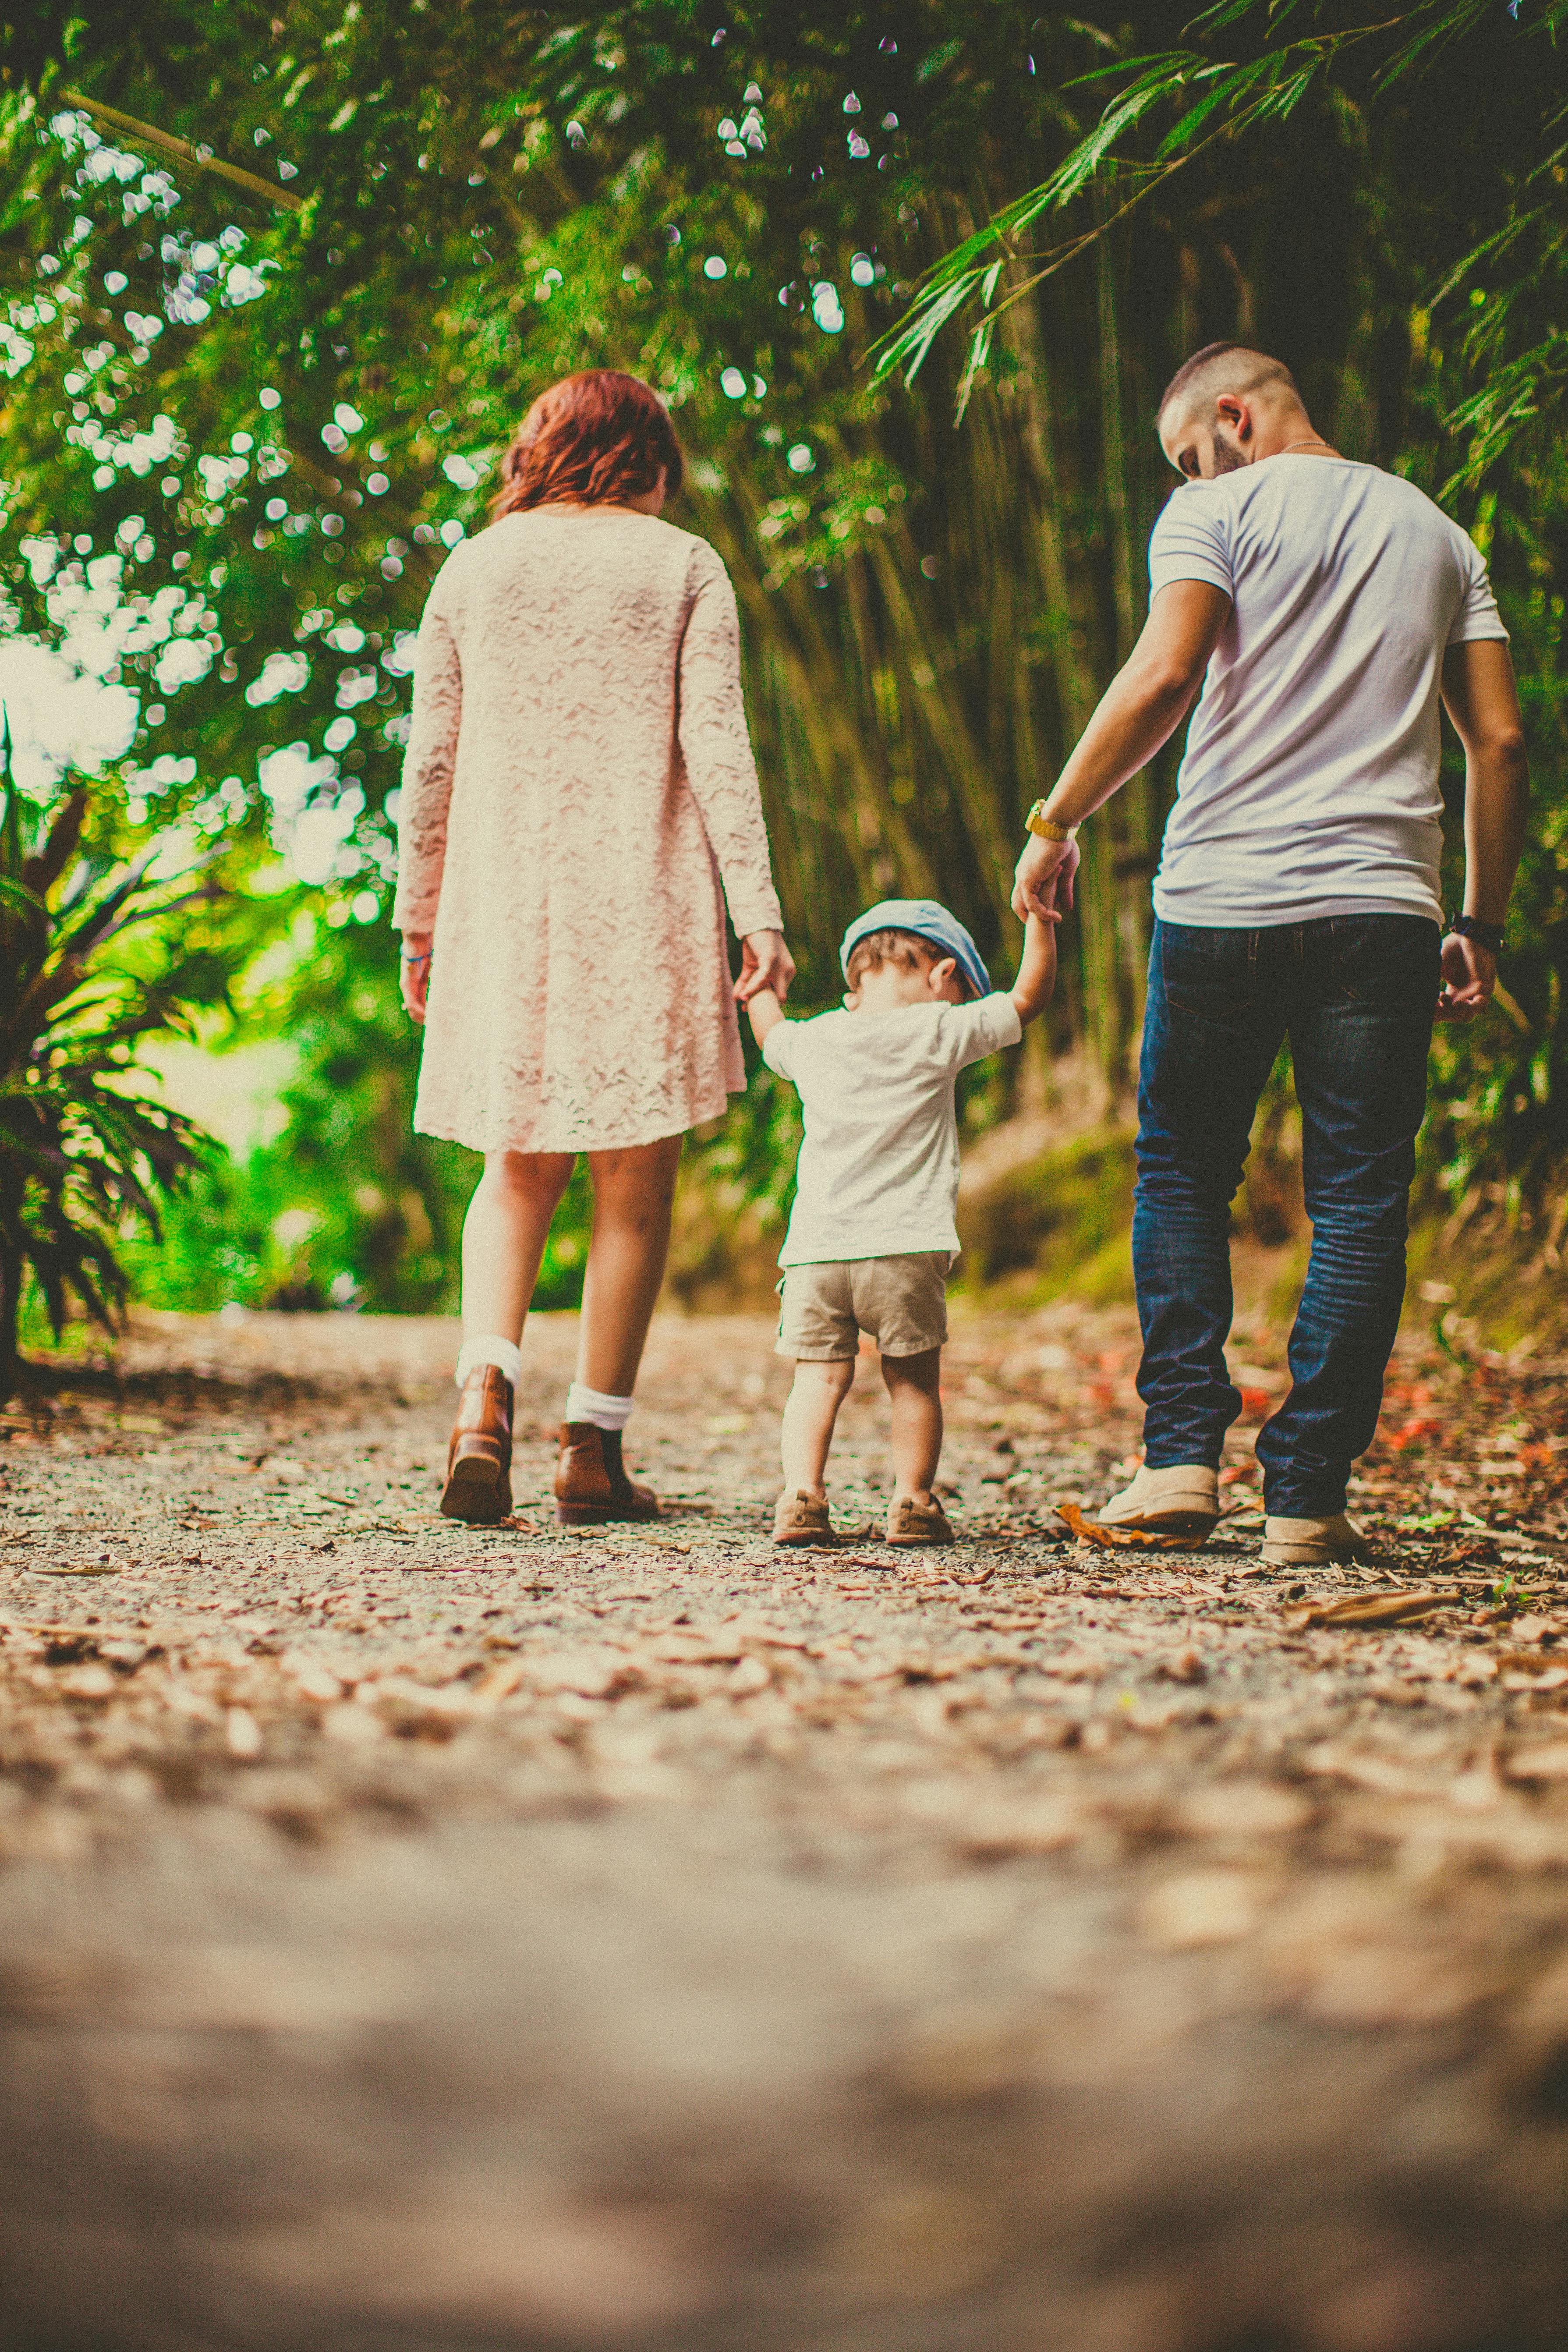 Una pareja paseando con su hijo | Fuente: Pexels